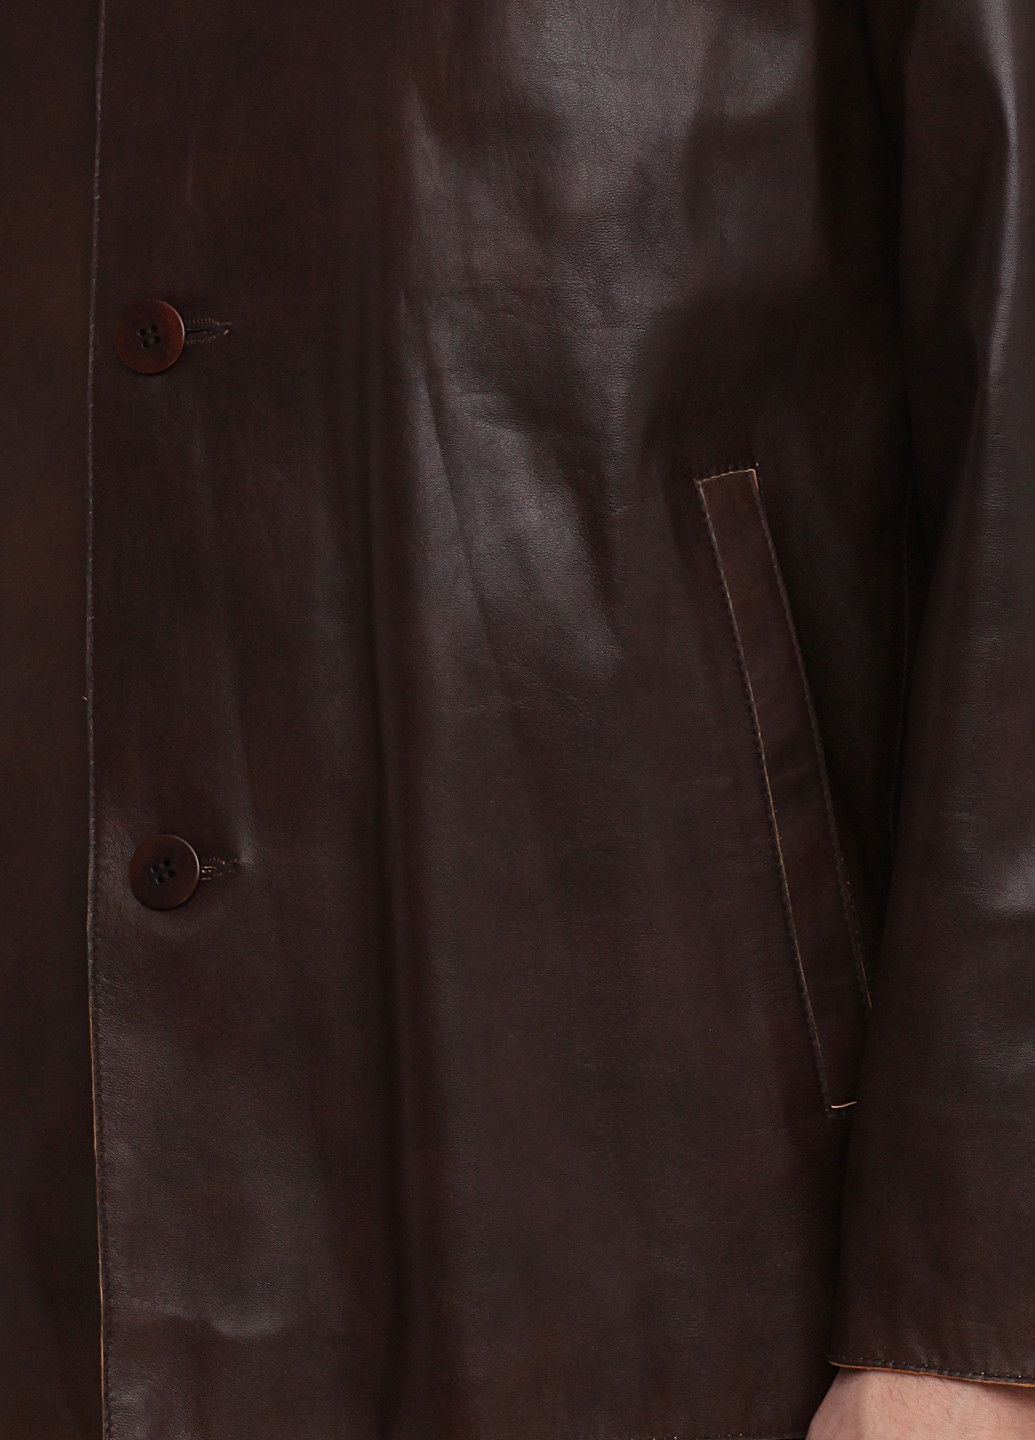 Шоколадная демисезонная куртка кожаная JCC